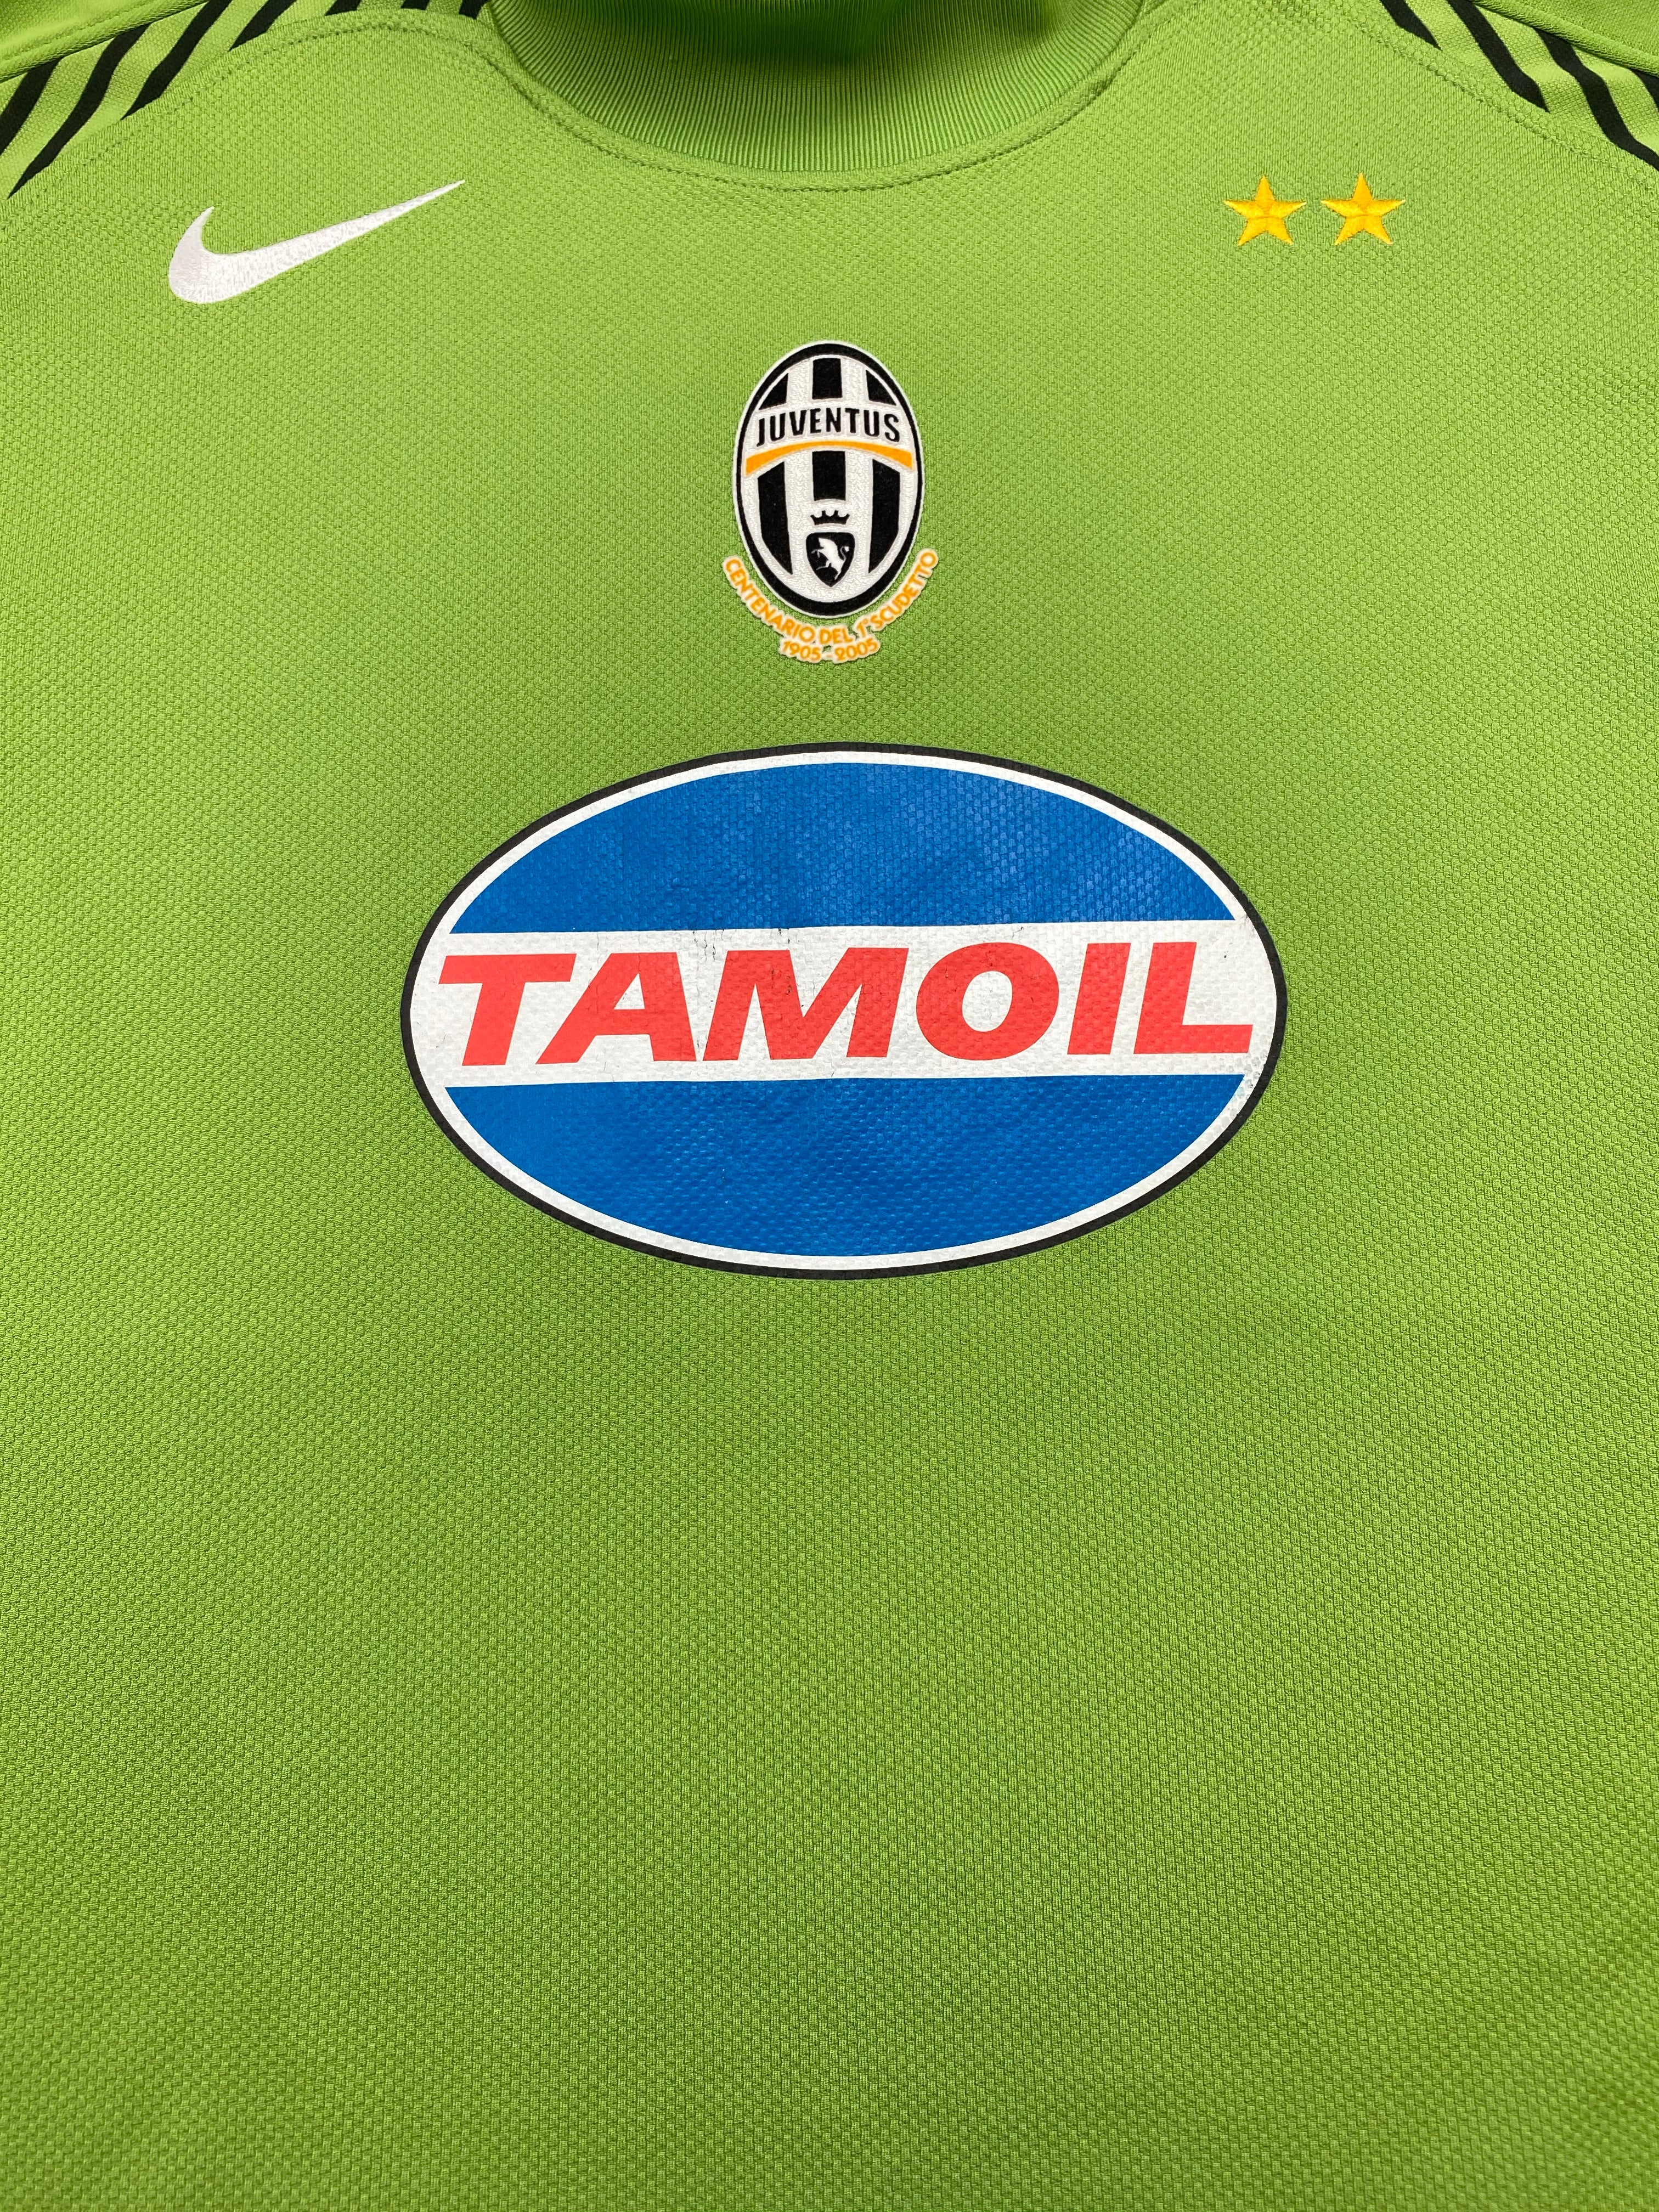 Maillot Juventus GK 2005/06 (L) 8.5/10